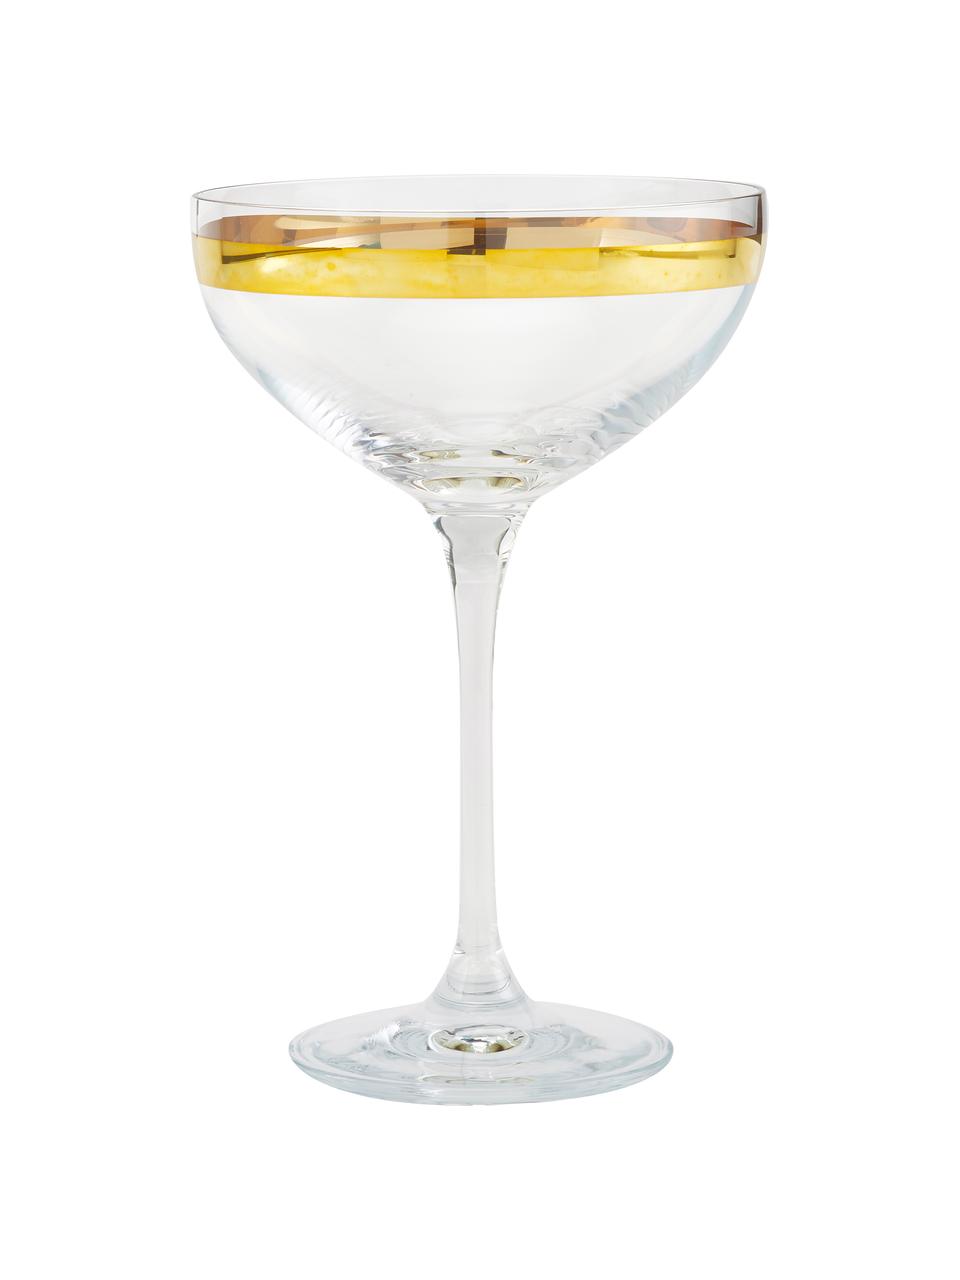 Sada sklenic na šampaňské se zlatými ornamenty Deco, 8 dílů, Transparentní, zlatá